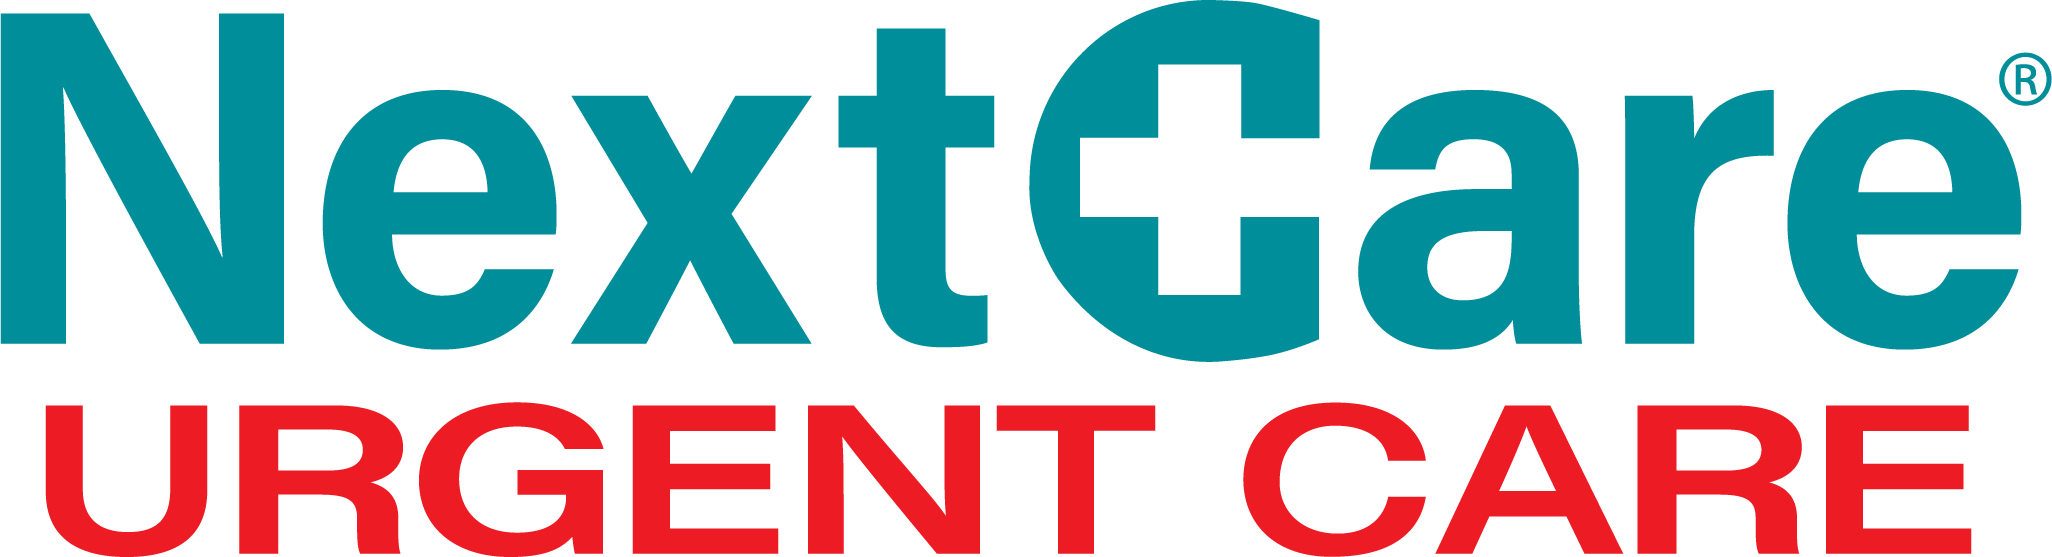 NextCare Urgent Care - Burlington Logo